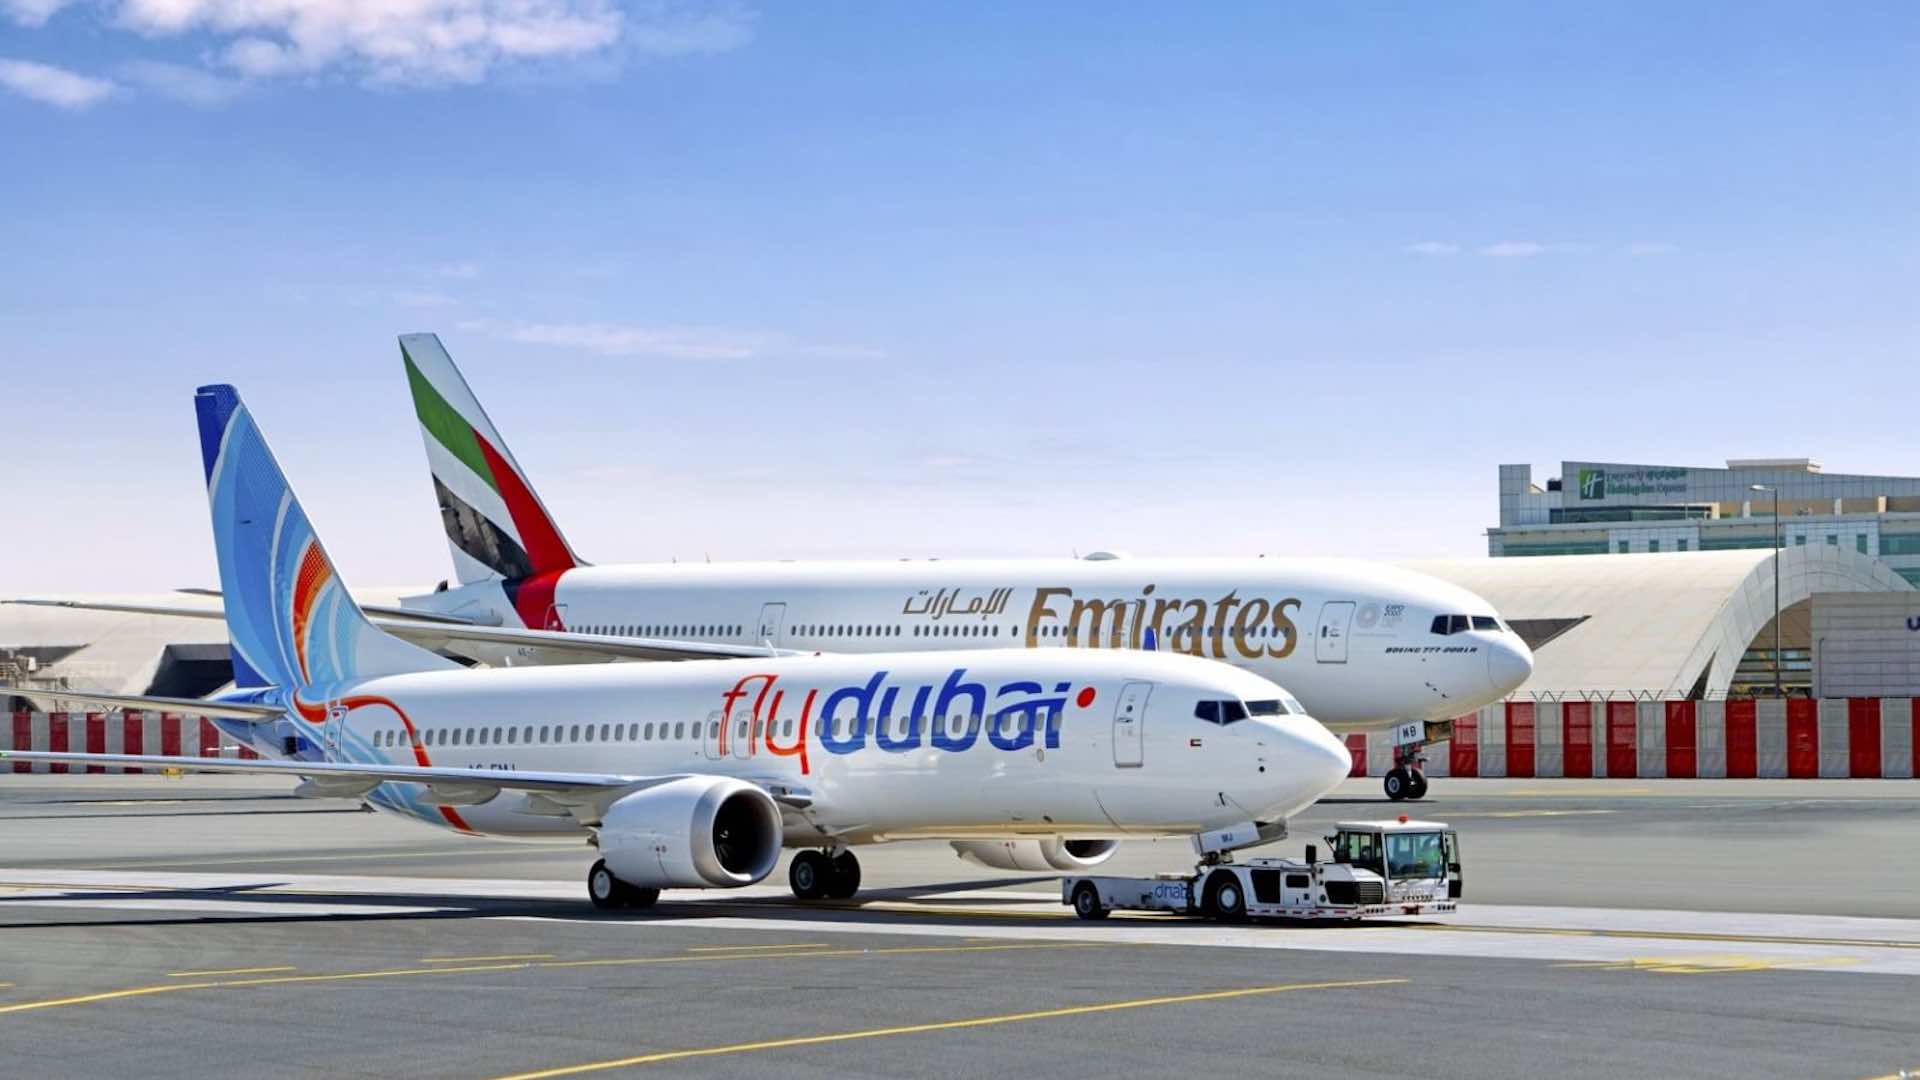 दुबई हवाई अड्डे के टर्मिनल 3 पर एमिरेट्स और फ्लाईदुबई की चेक-इन सेवा फिर से शुरू